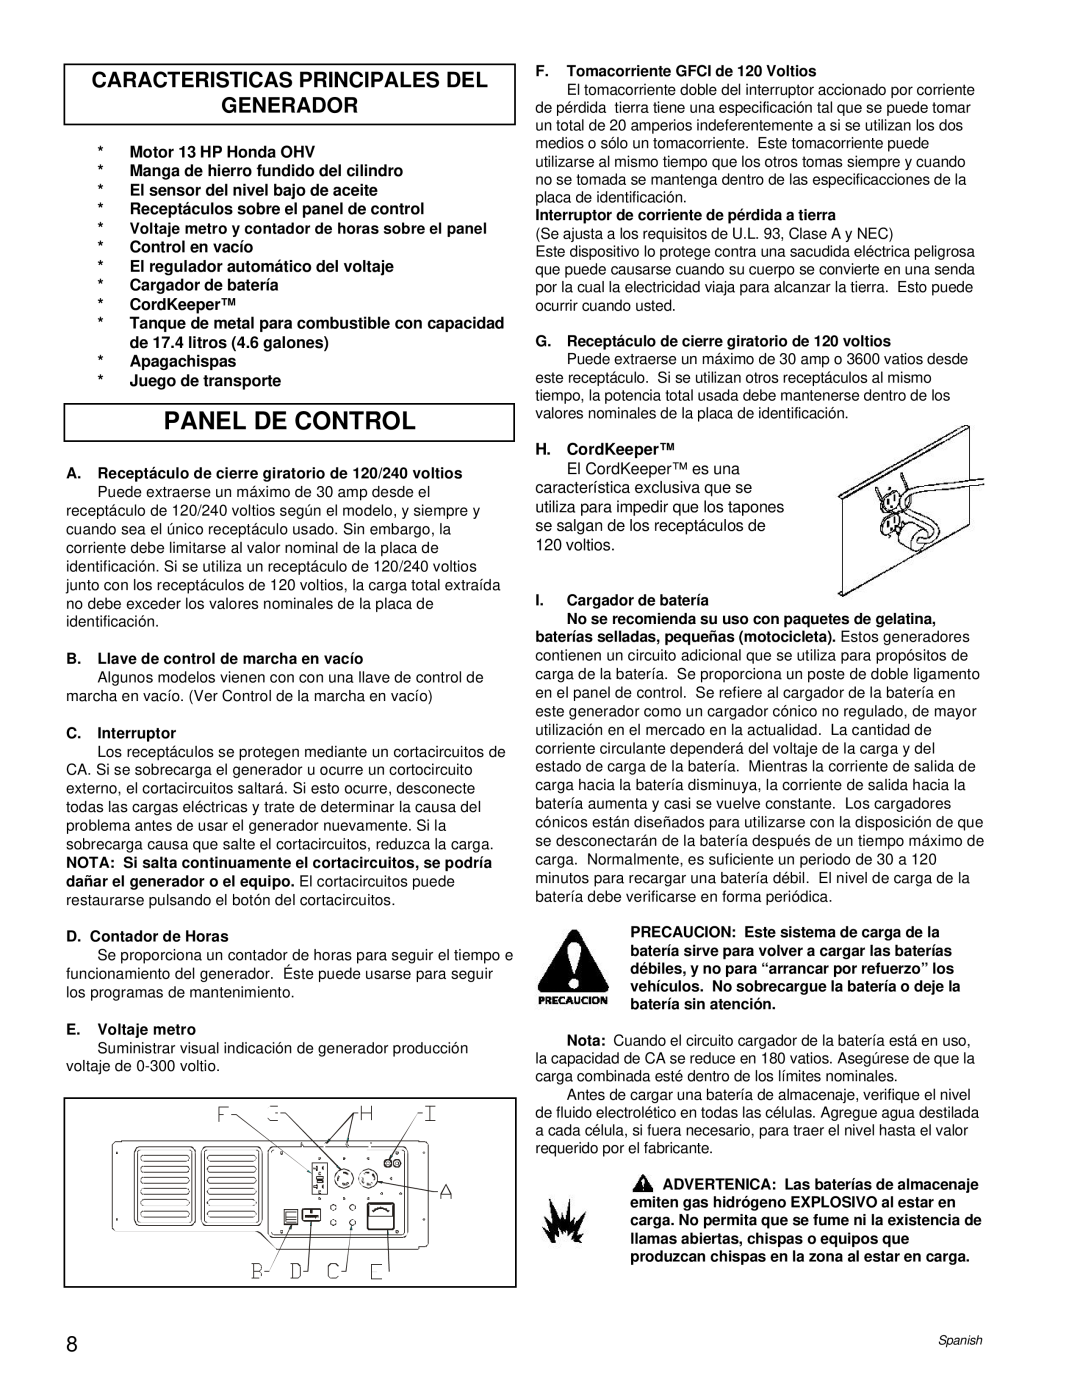 Powermate PM0496504.18 manual Panel De Control, Caracteristicas Principales Del Generador 